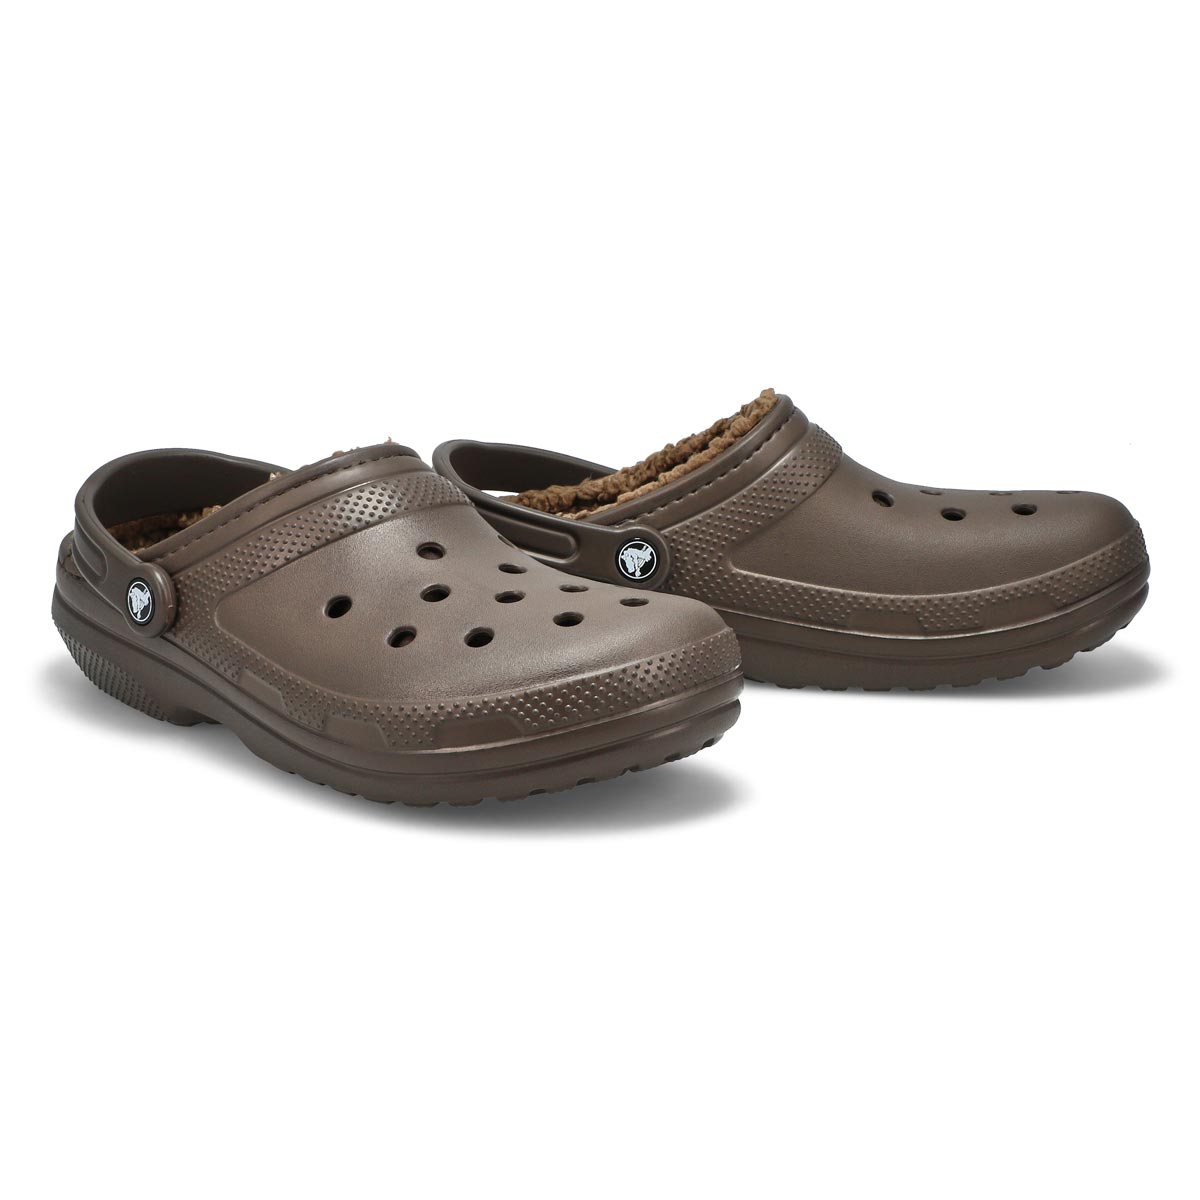 Crocs Men's Classic Lined Comfort Clog | eBay